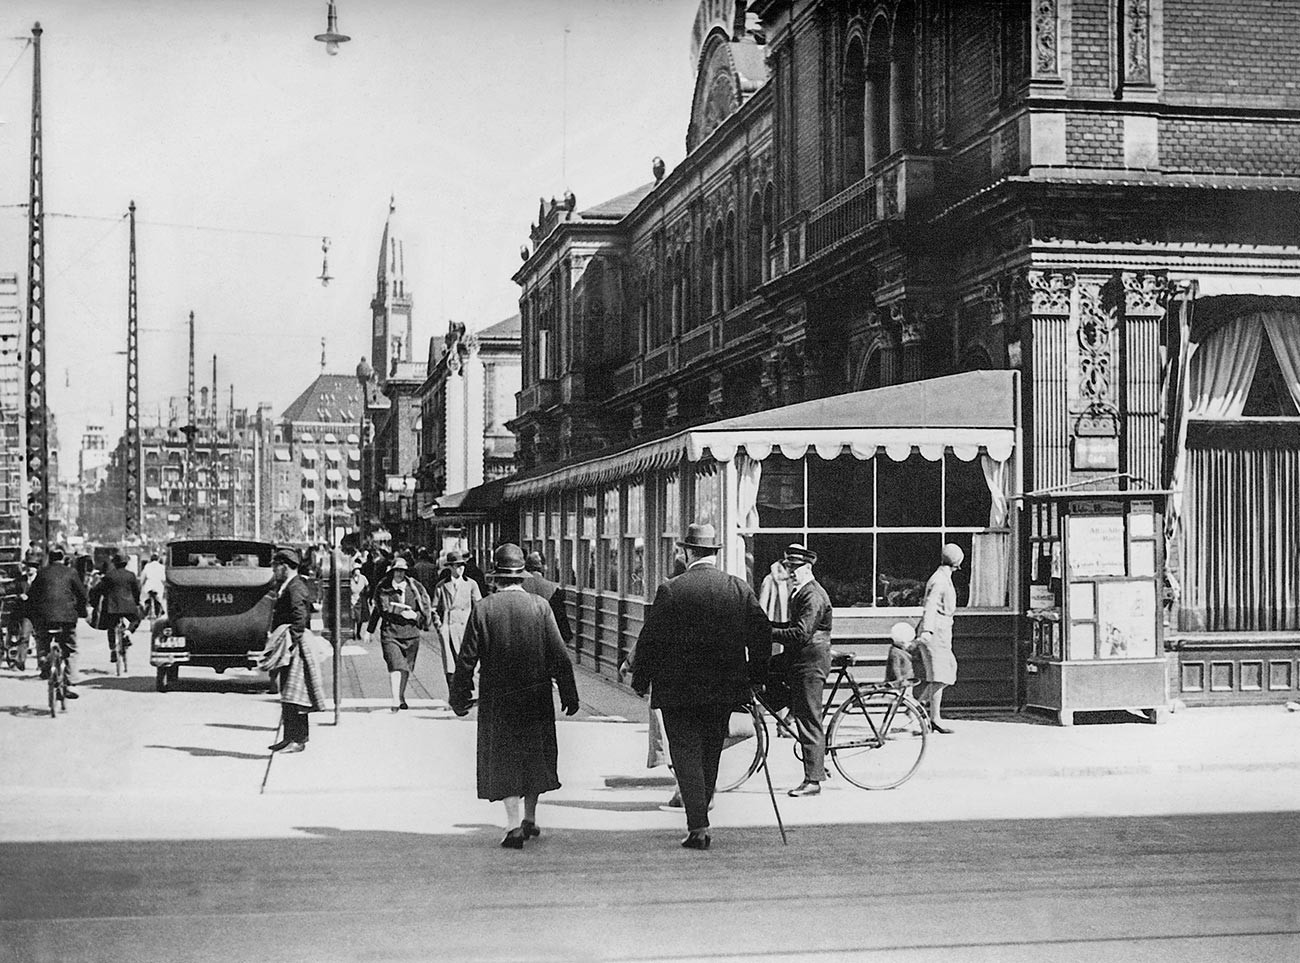 Prometna ulica u Kopenhagenu, 1931.

